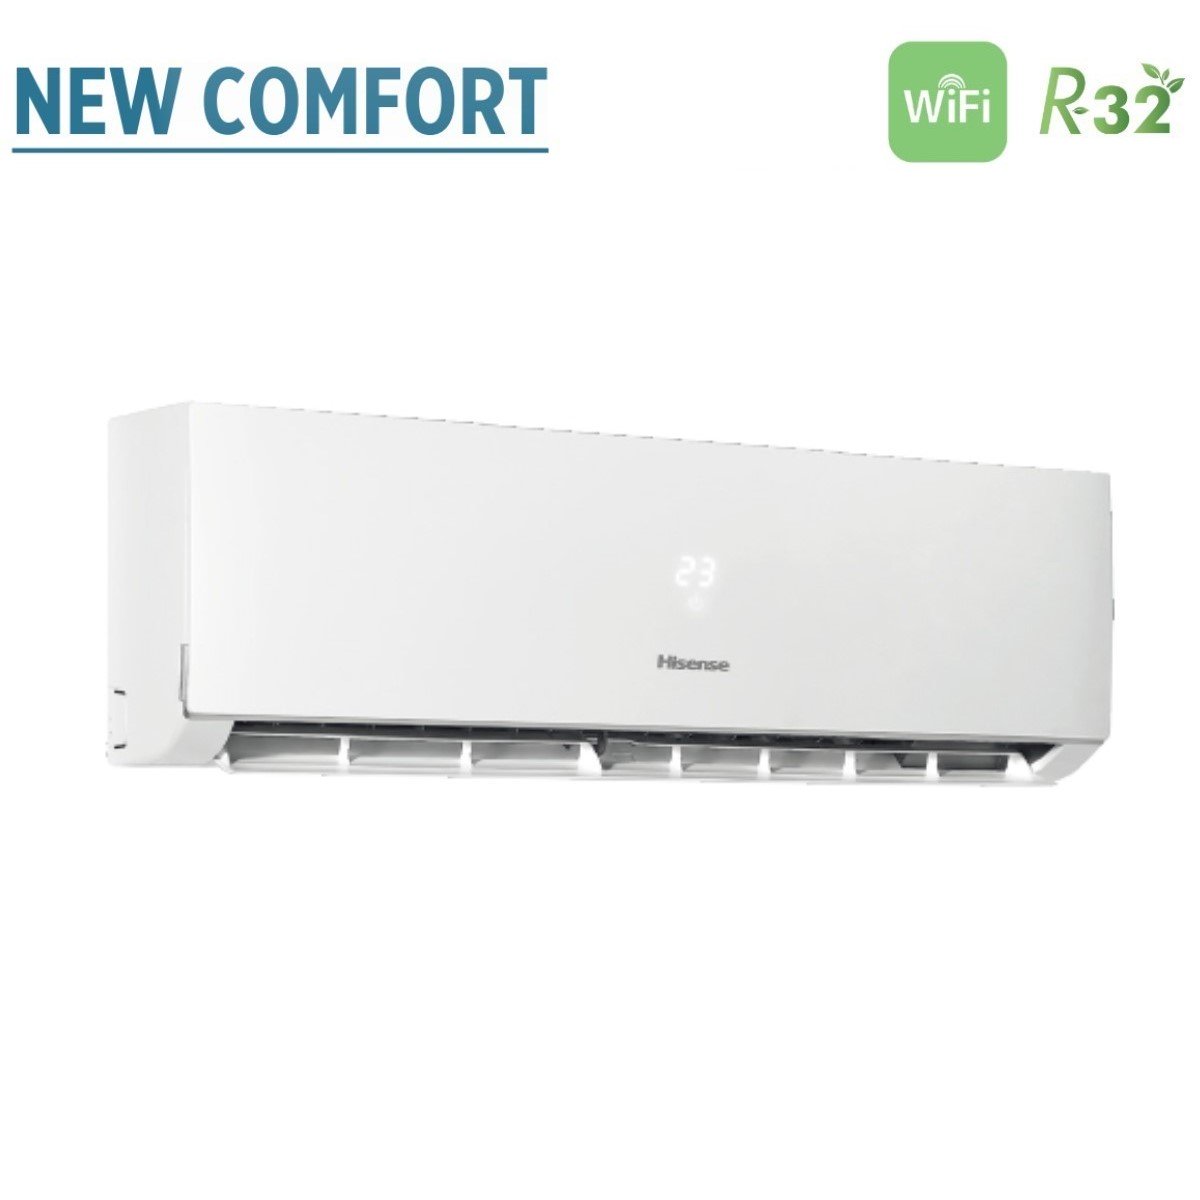 immagine-4-hisense-climatizzatore-condizionatore-hisense-dual-split-inverter-serie-new-comfort-99-con-2amw35u4rra-r-32-wi-fi-optional-90009000-novita-ean-8059657013446